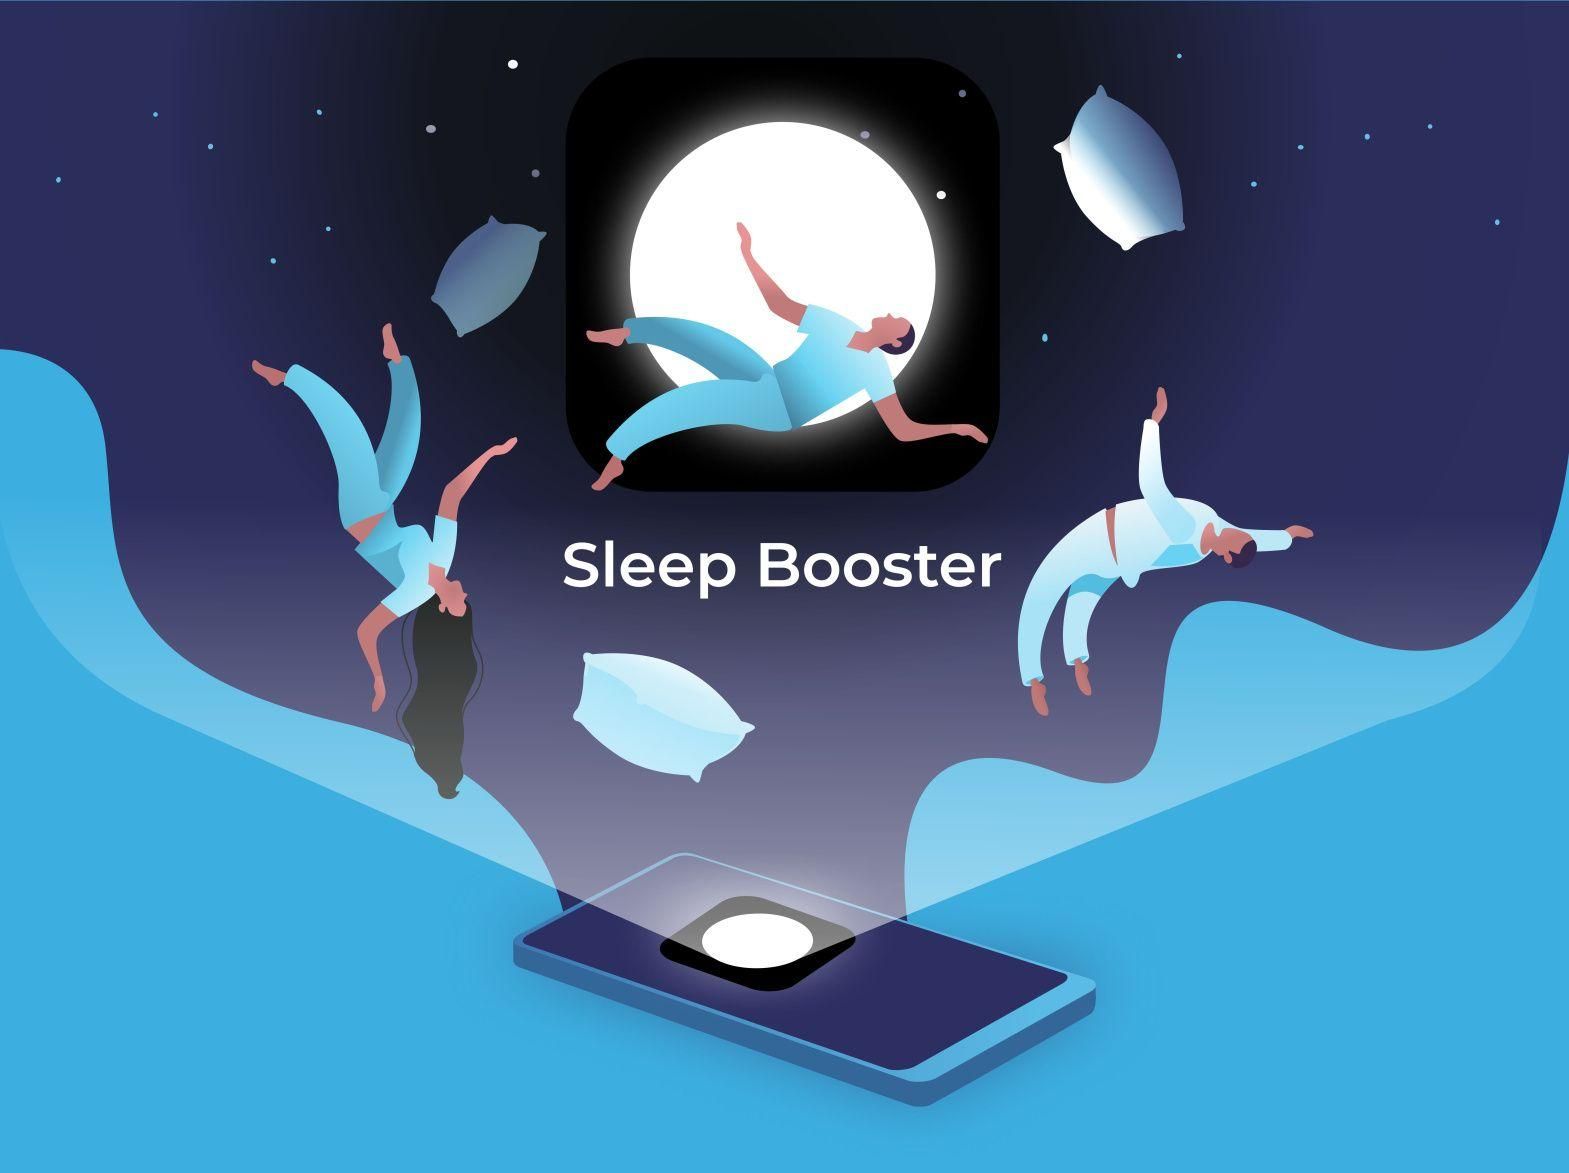  Приложение Sleep Booster стало одним из самых популярных в США